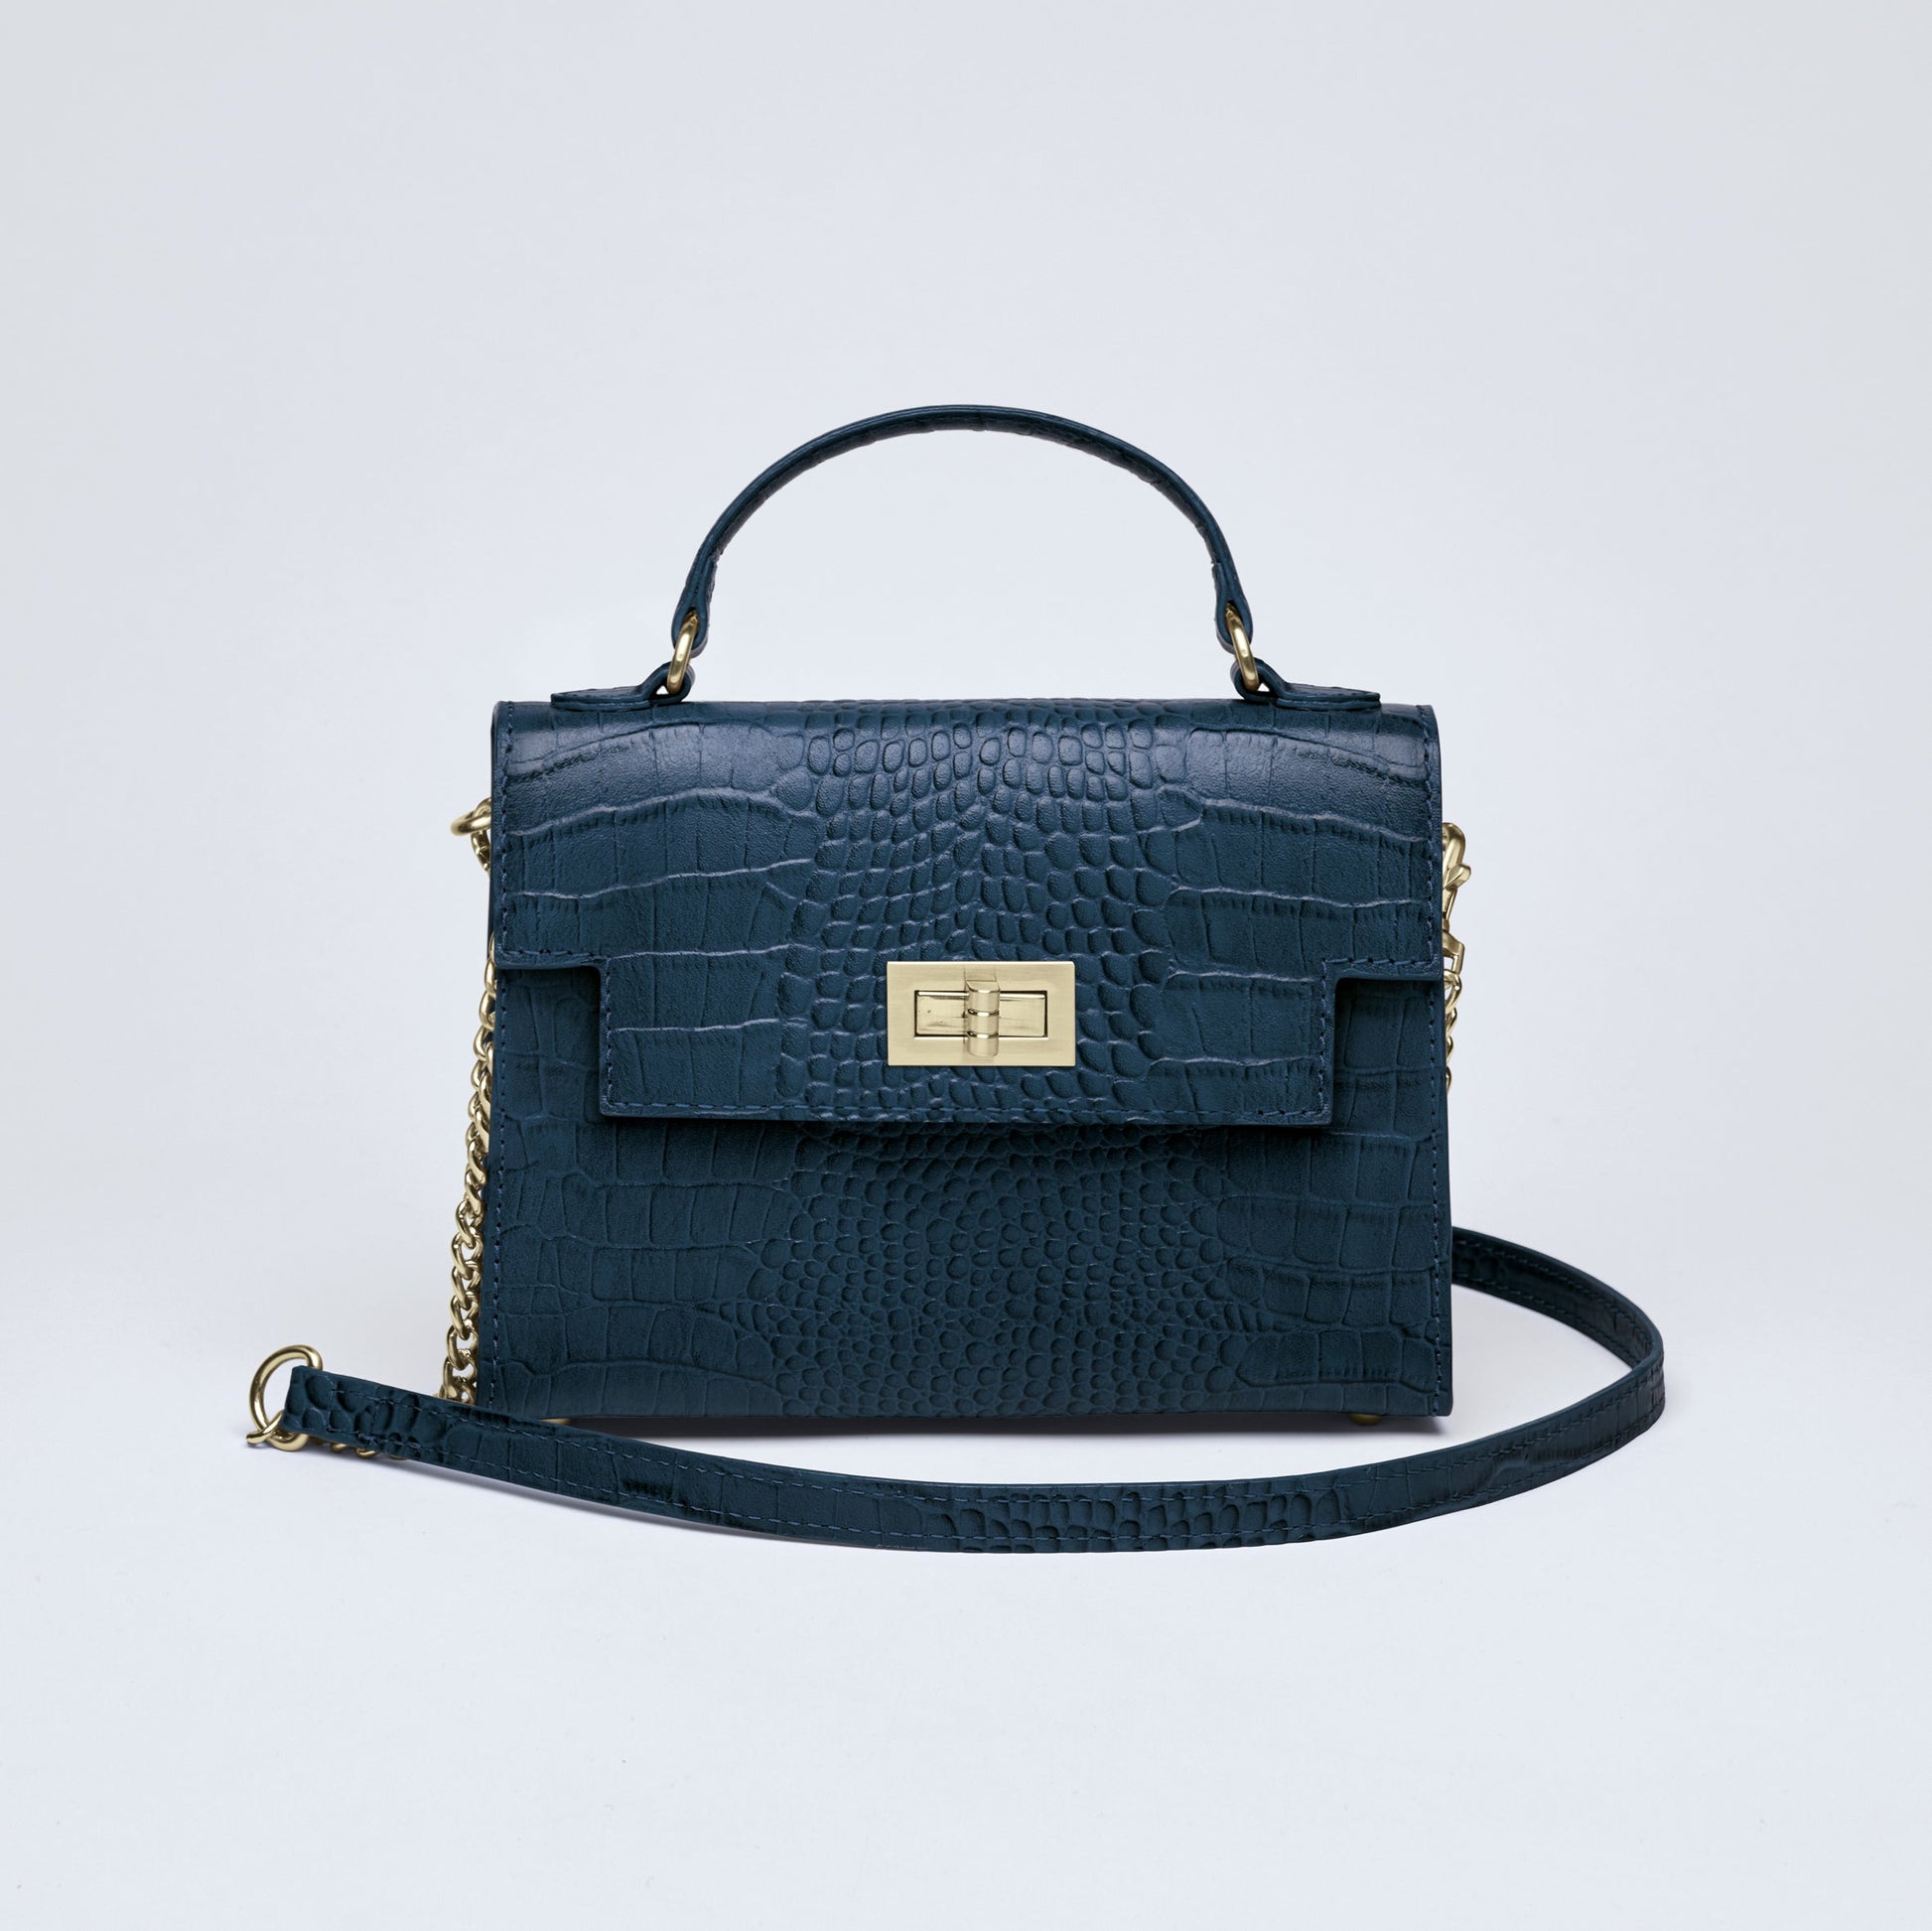 Croco leather handbag Monceau Navy blue